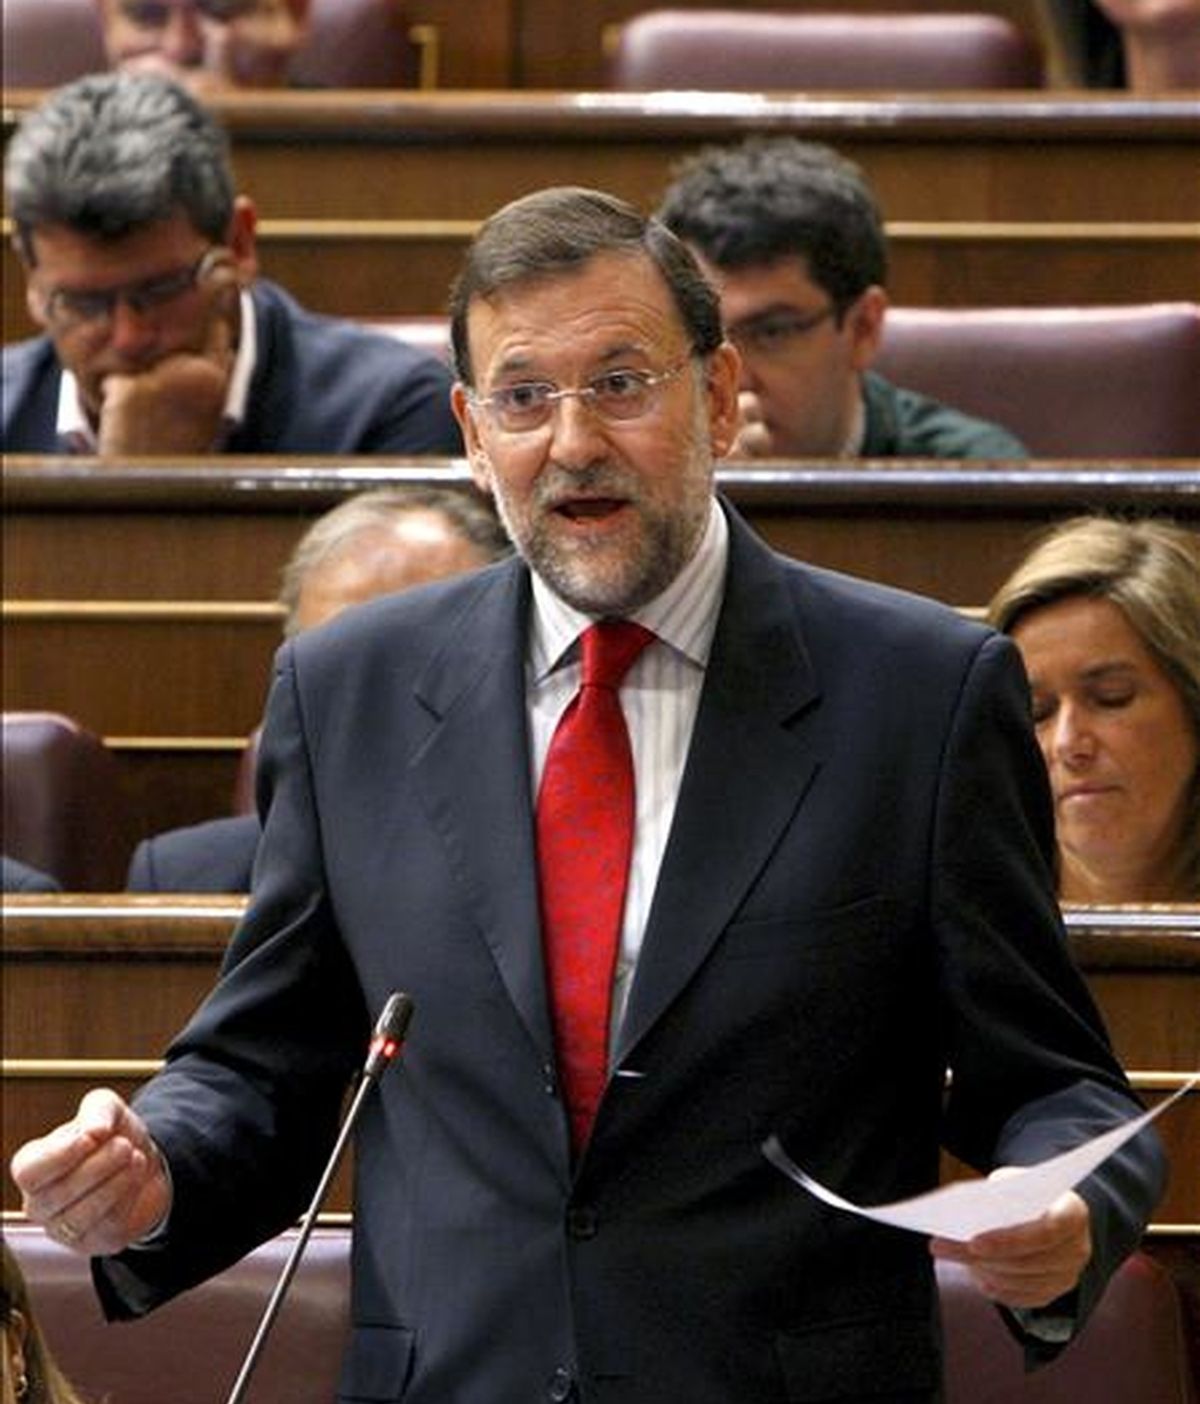 El líder del PP, Mariano Rajoy, durante una de sus intervenciones en la sesión de control al Ejecutivo que se celebra en el Congreso, y en la que se habla, entre otros asuntos, de las críticas del Banco de España al aumento del déficit público. EFE